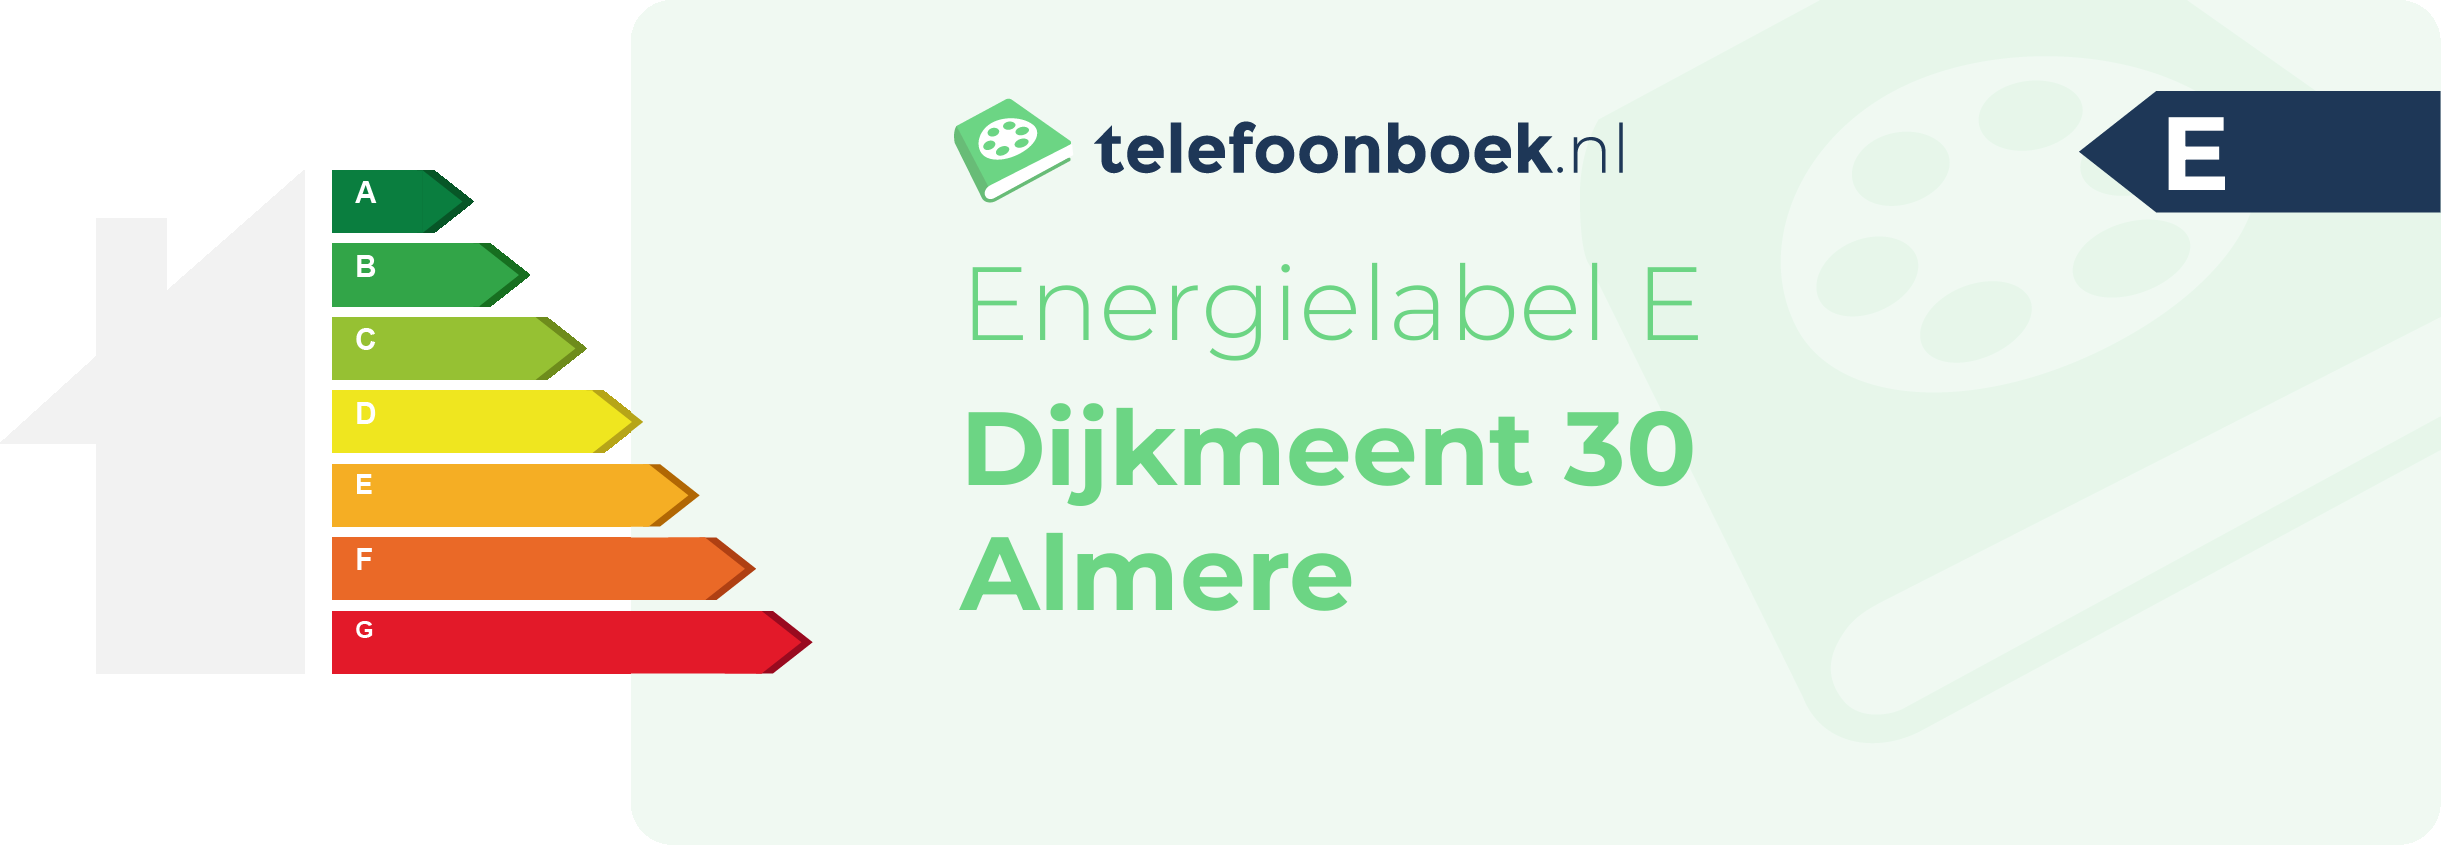 Energielabel Dijkmeent 30 Almere